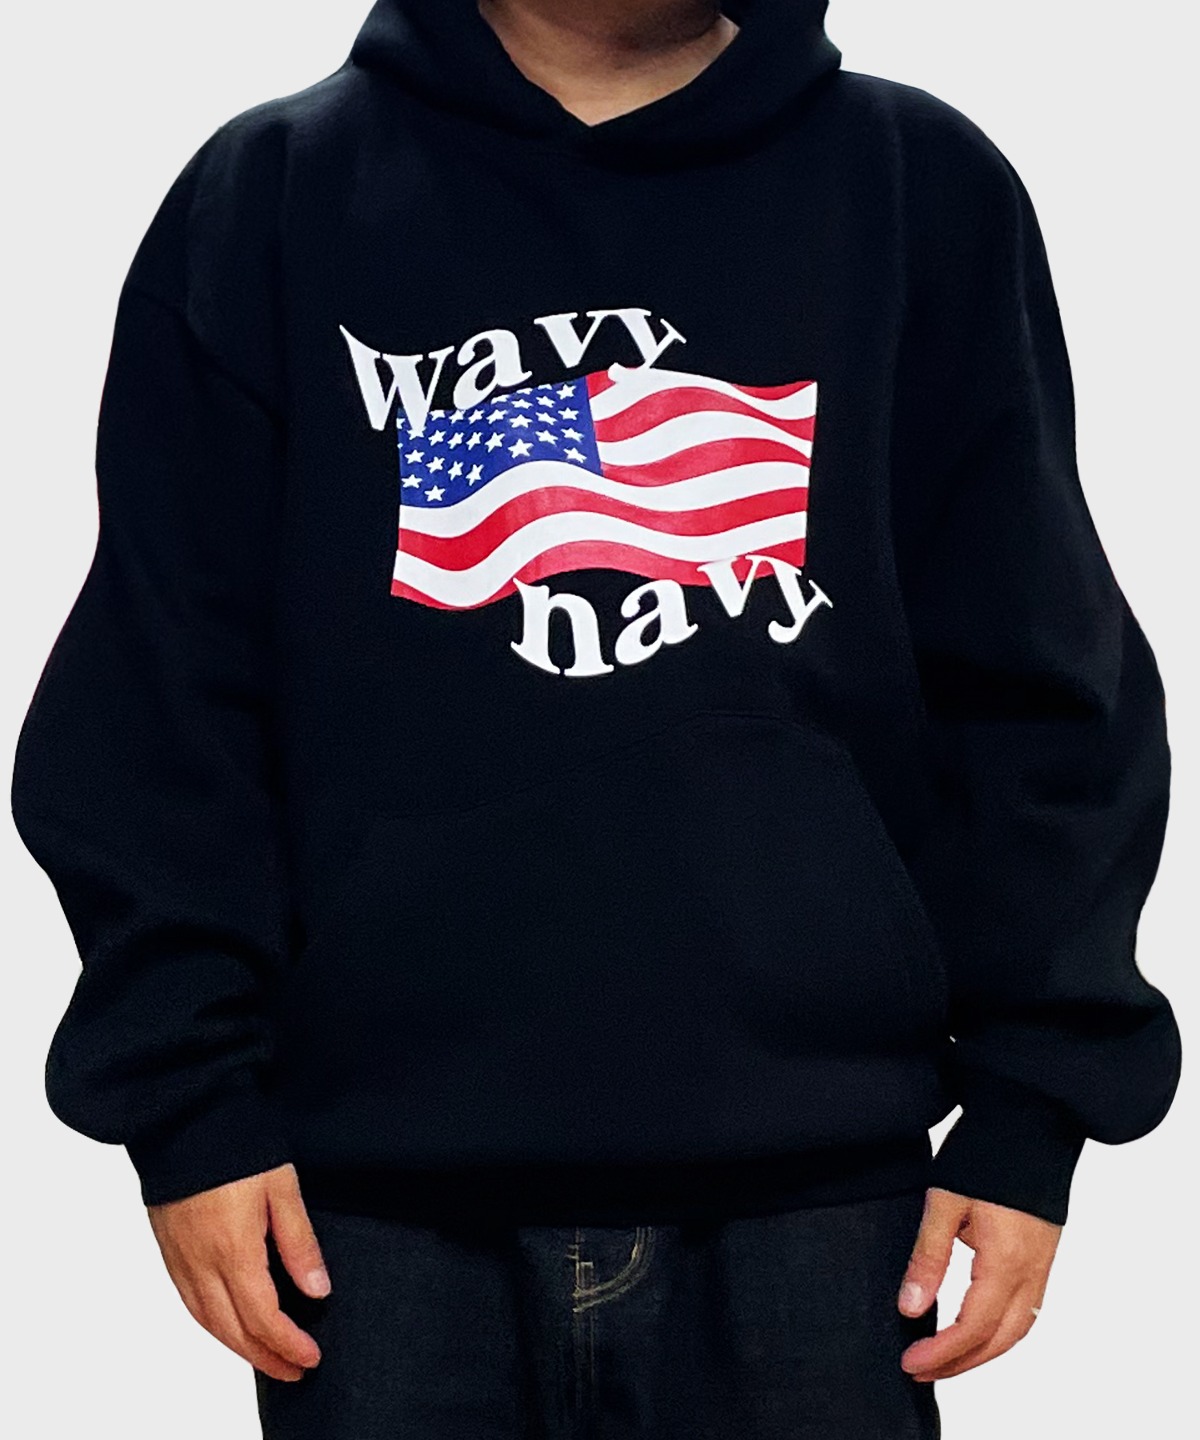 wavy navy hoodie (black)